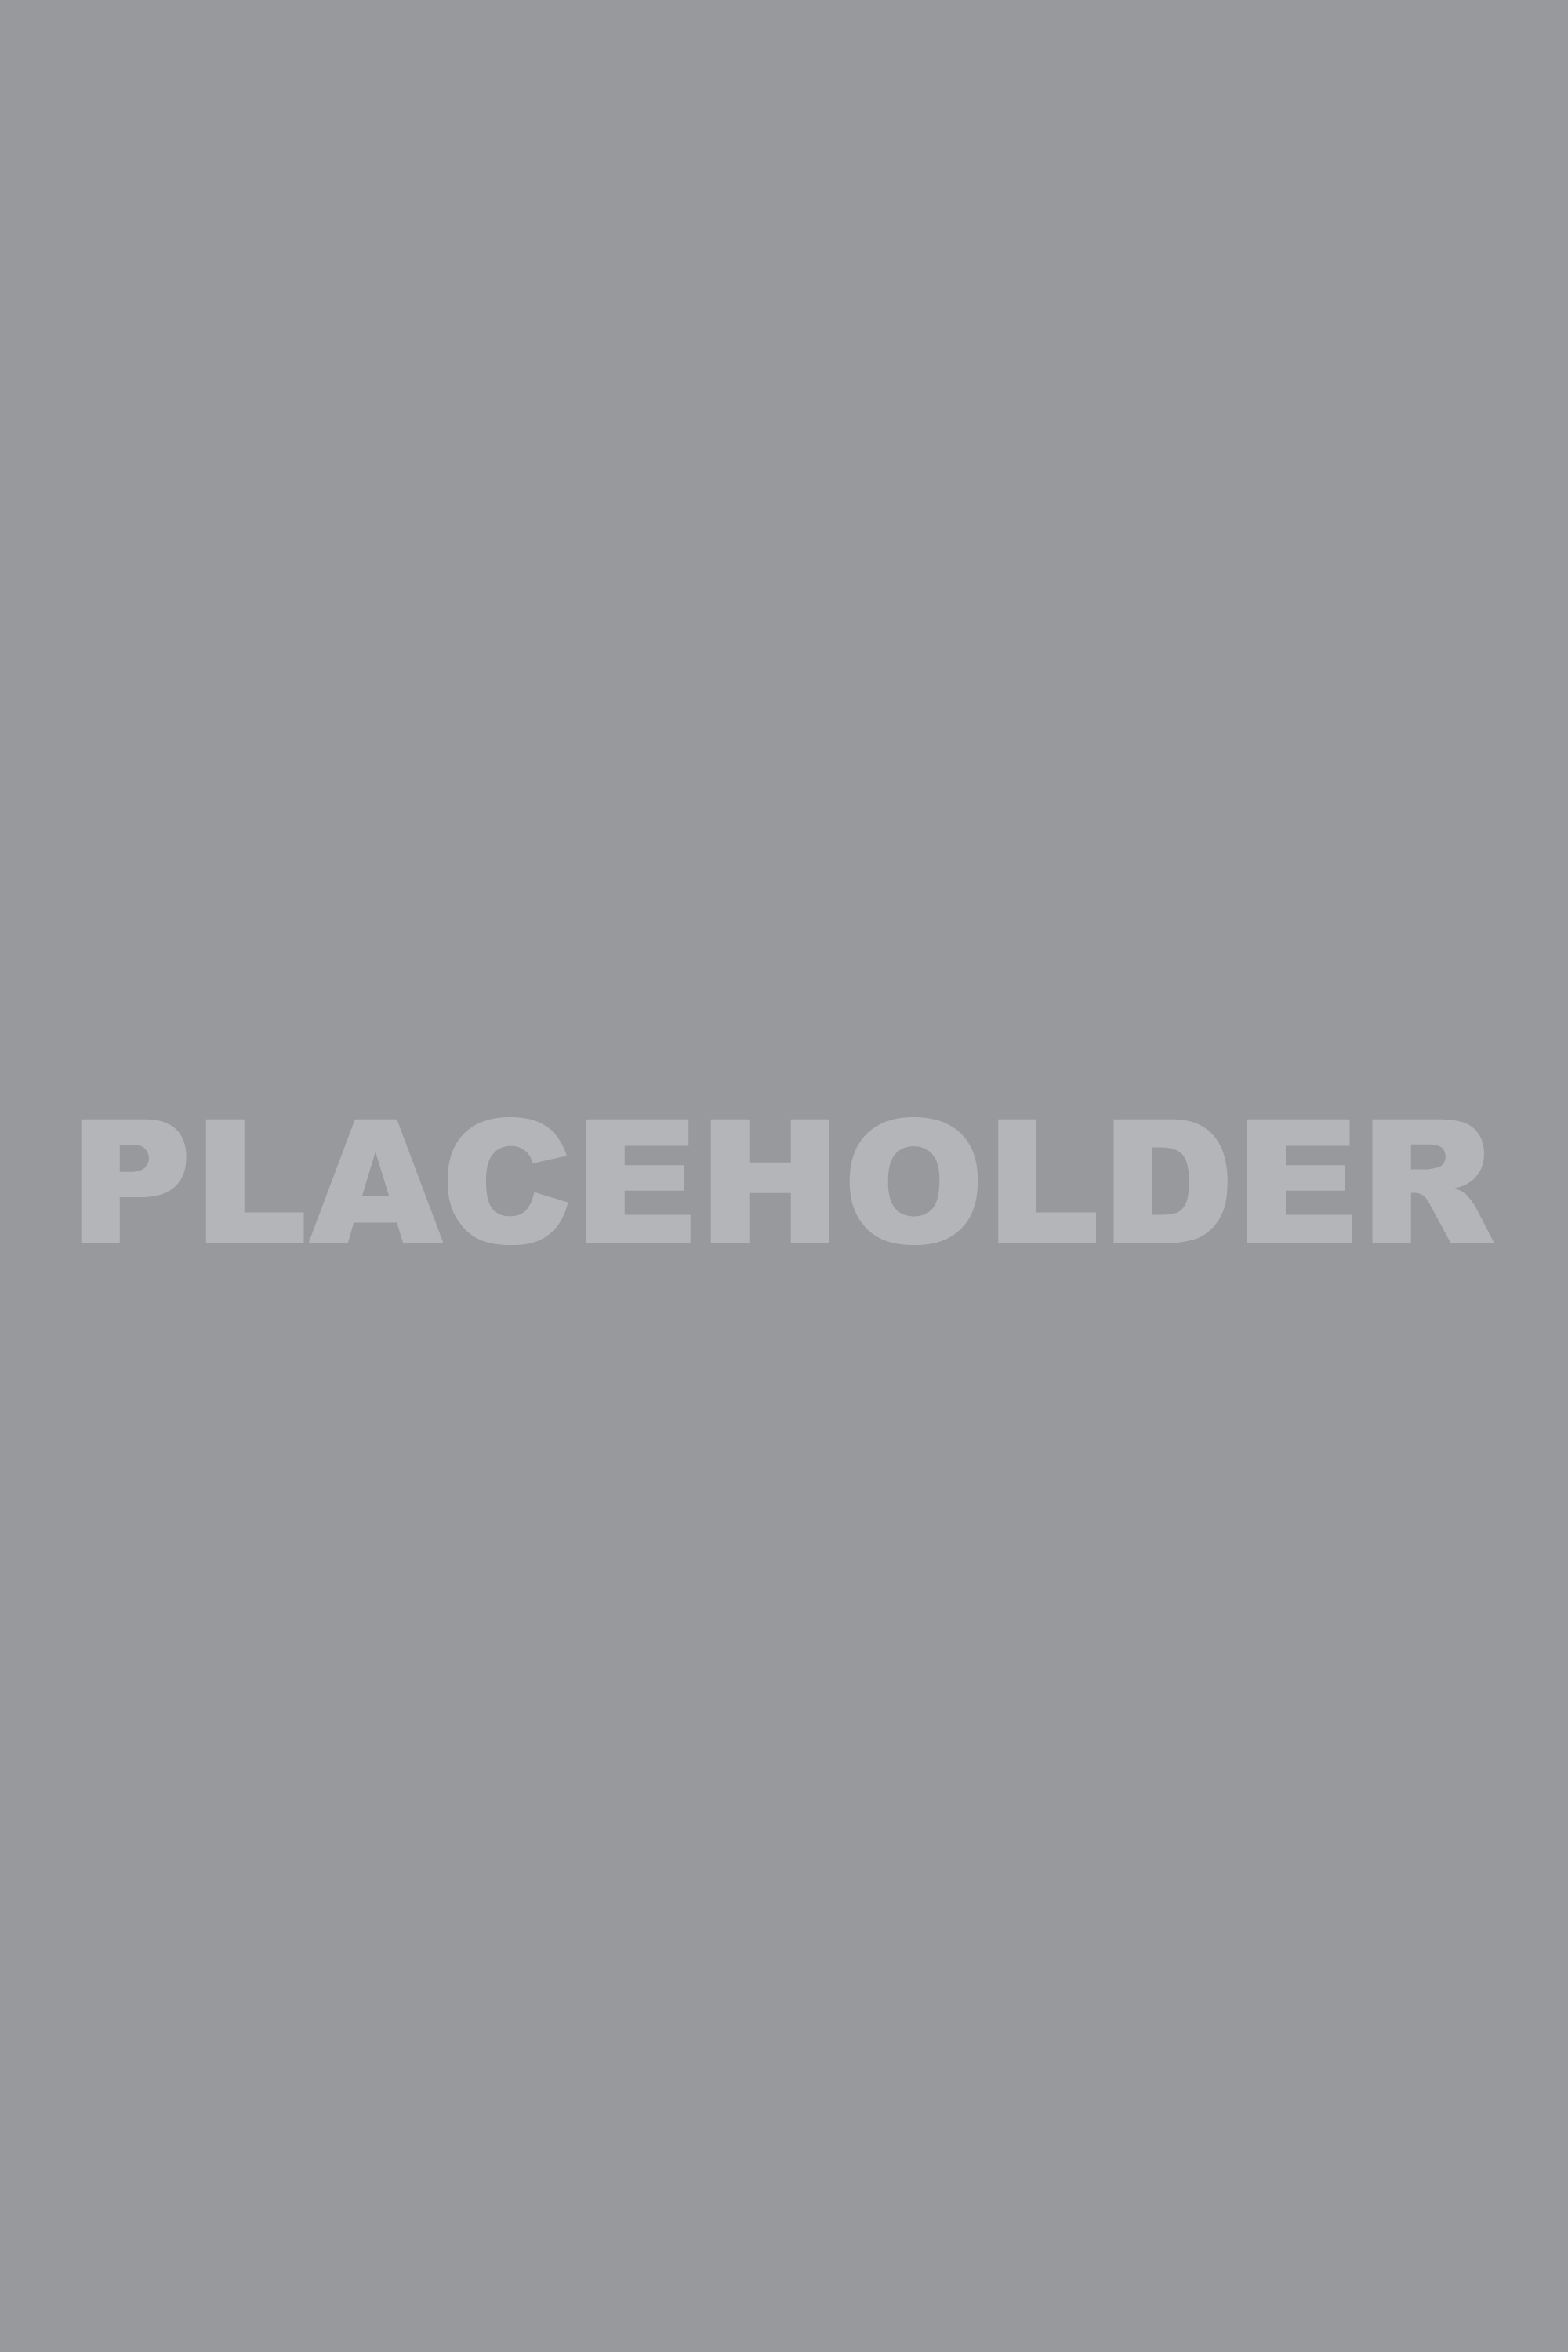 placeholder-vert